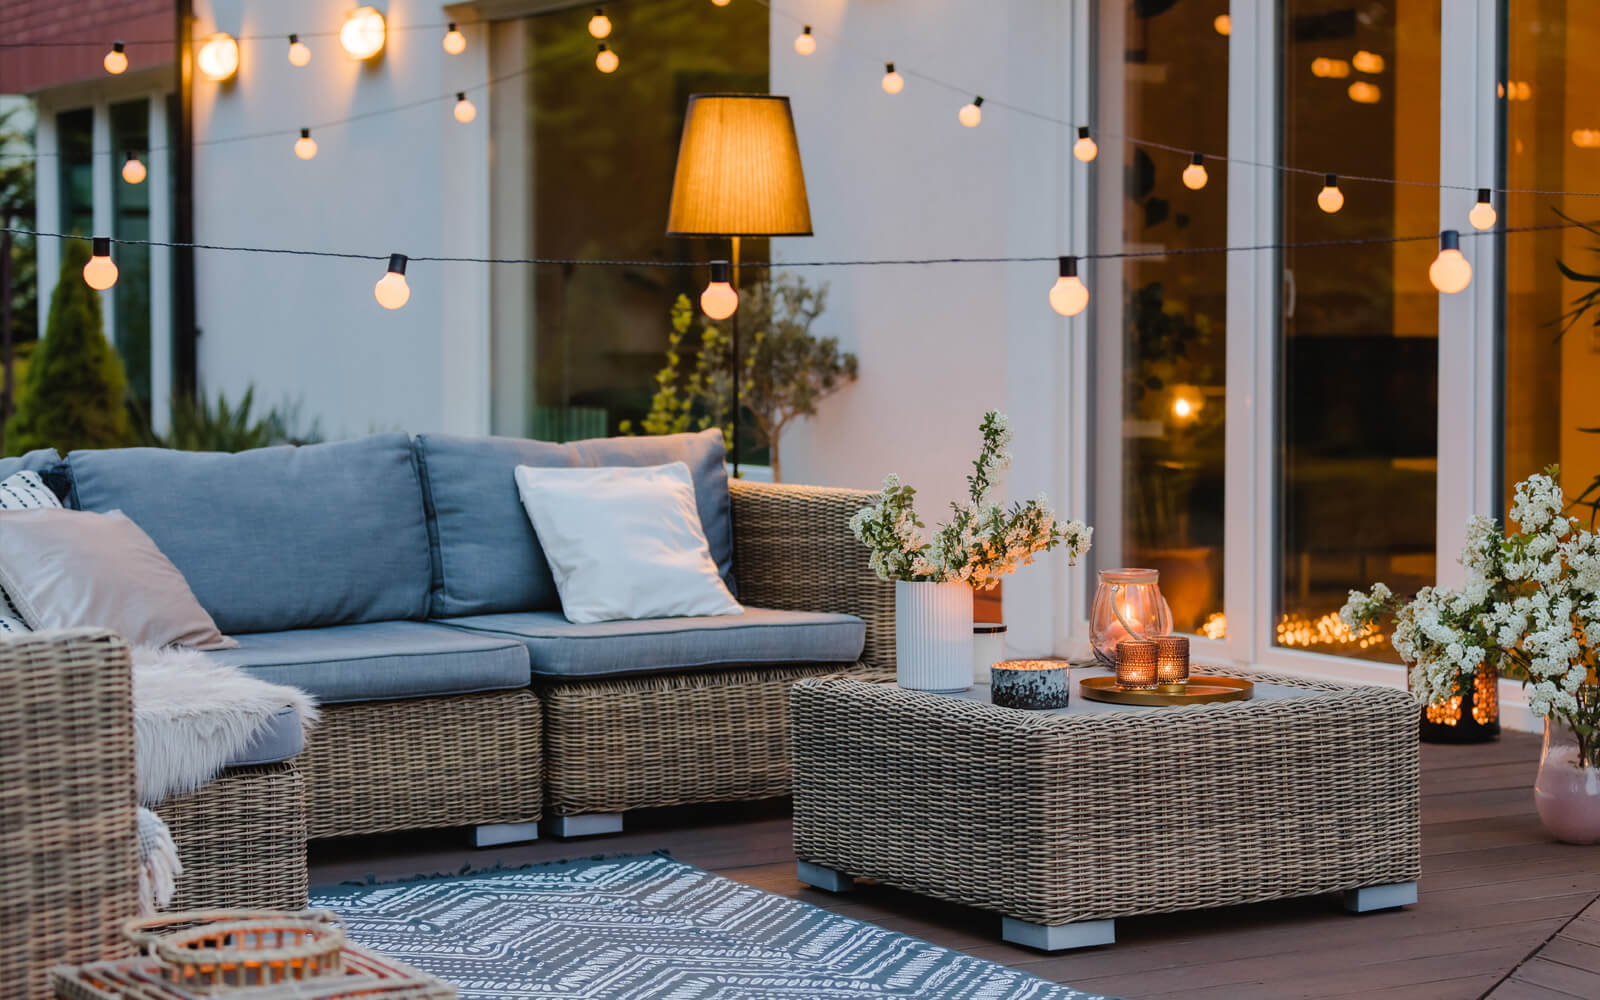 Lounge im Garten in Abendstimmung mit Lampion-Beleuchtung